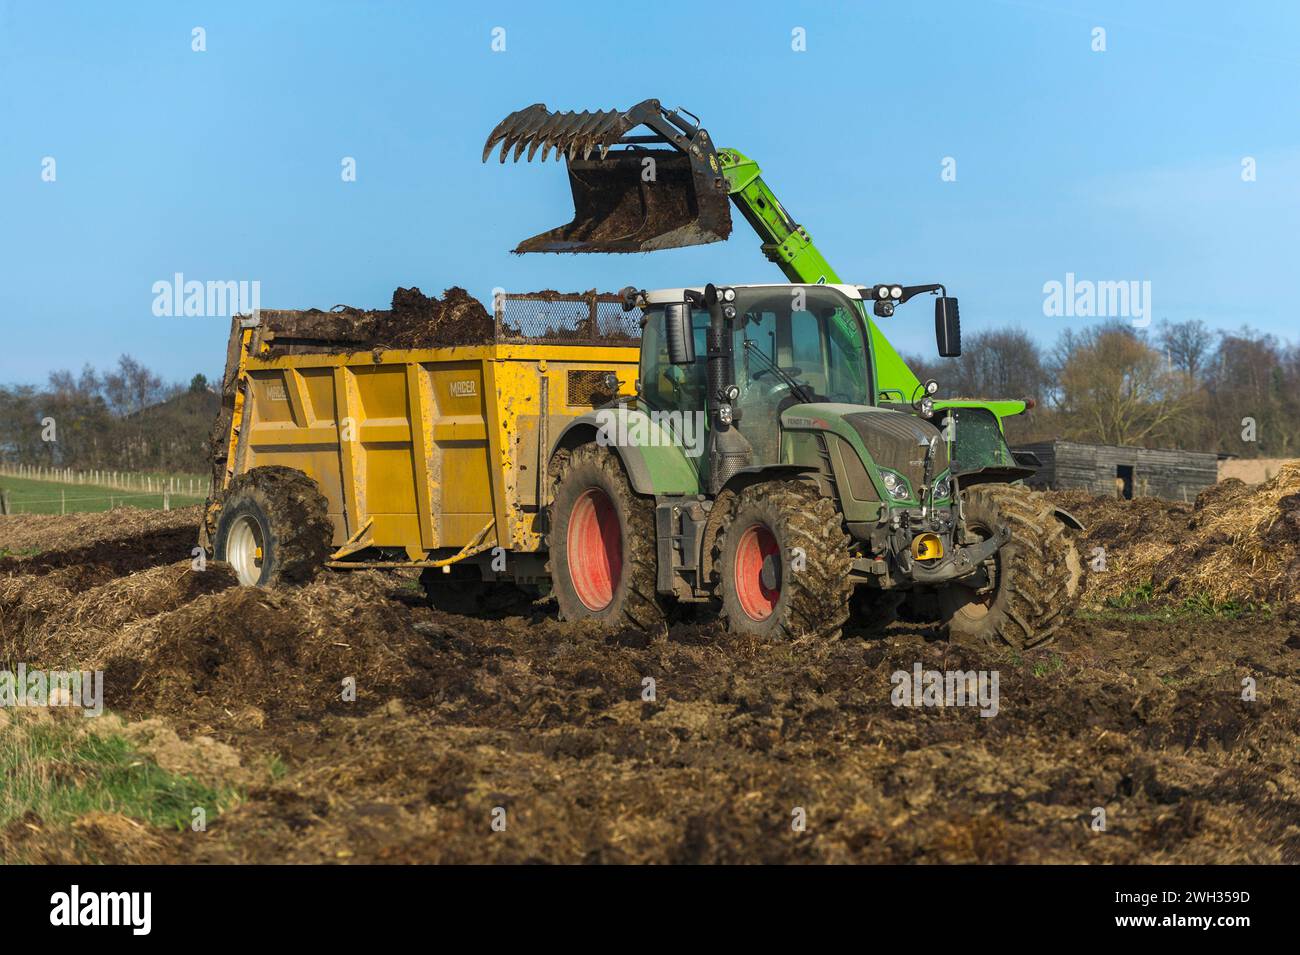 Collecting fertilizer in a tractor for manure spreading in the fields |  Collecte de fumier dans une epandeuse avant epandage du lisier dans les champ Stock Photo